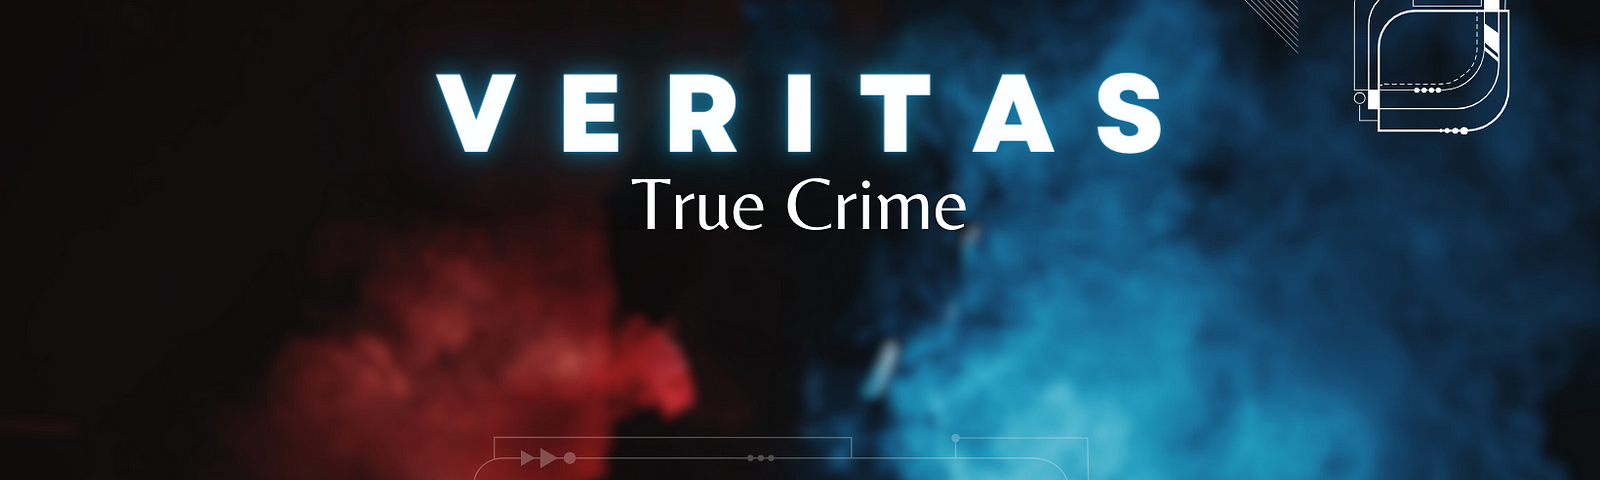 The veritas true crime logo